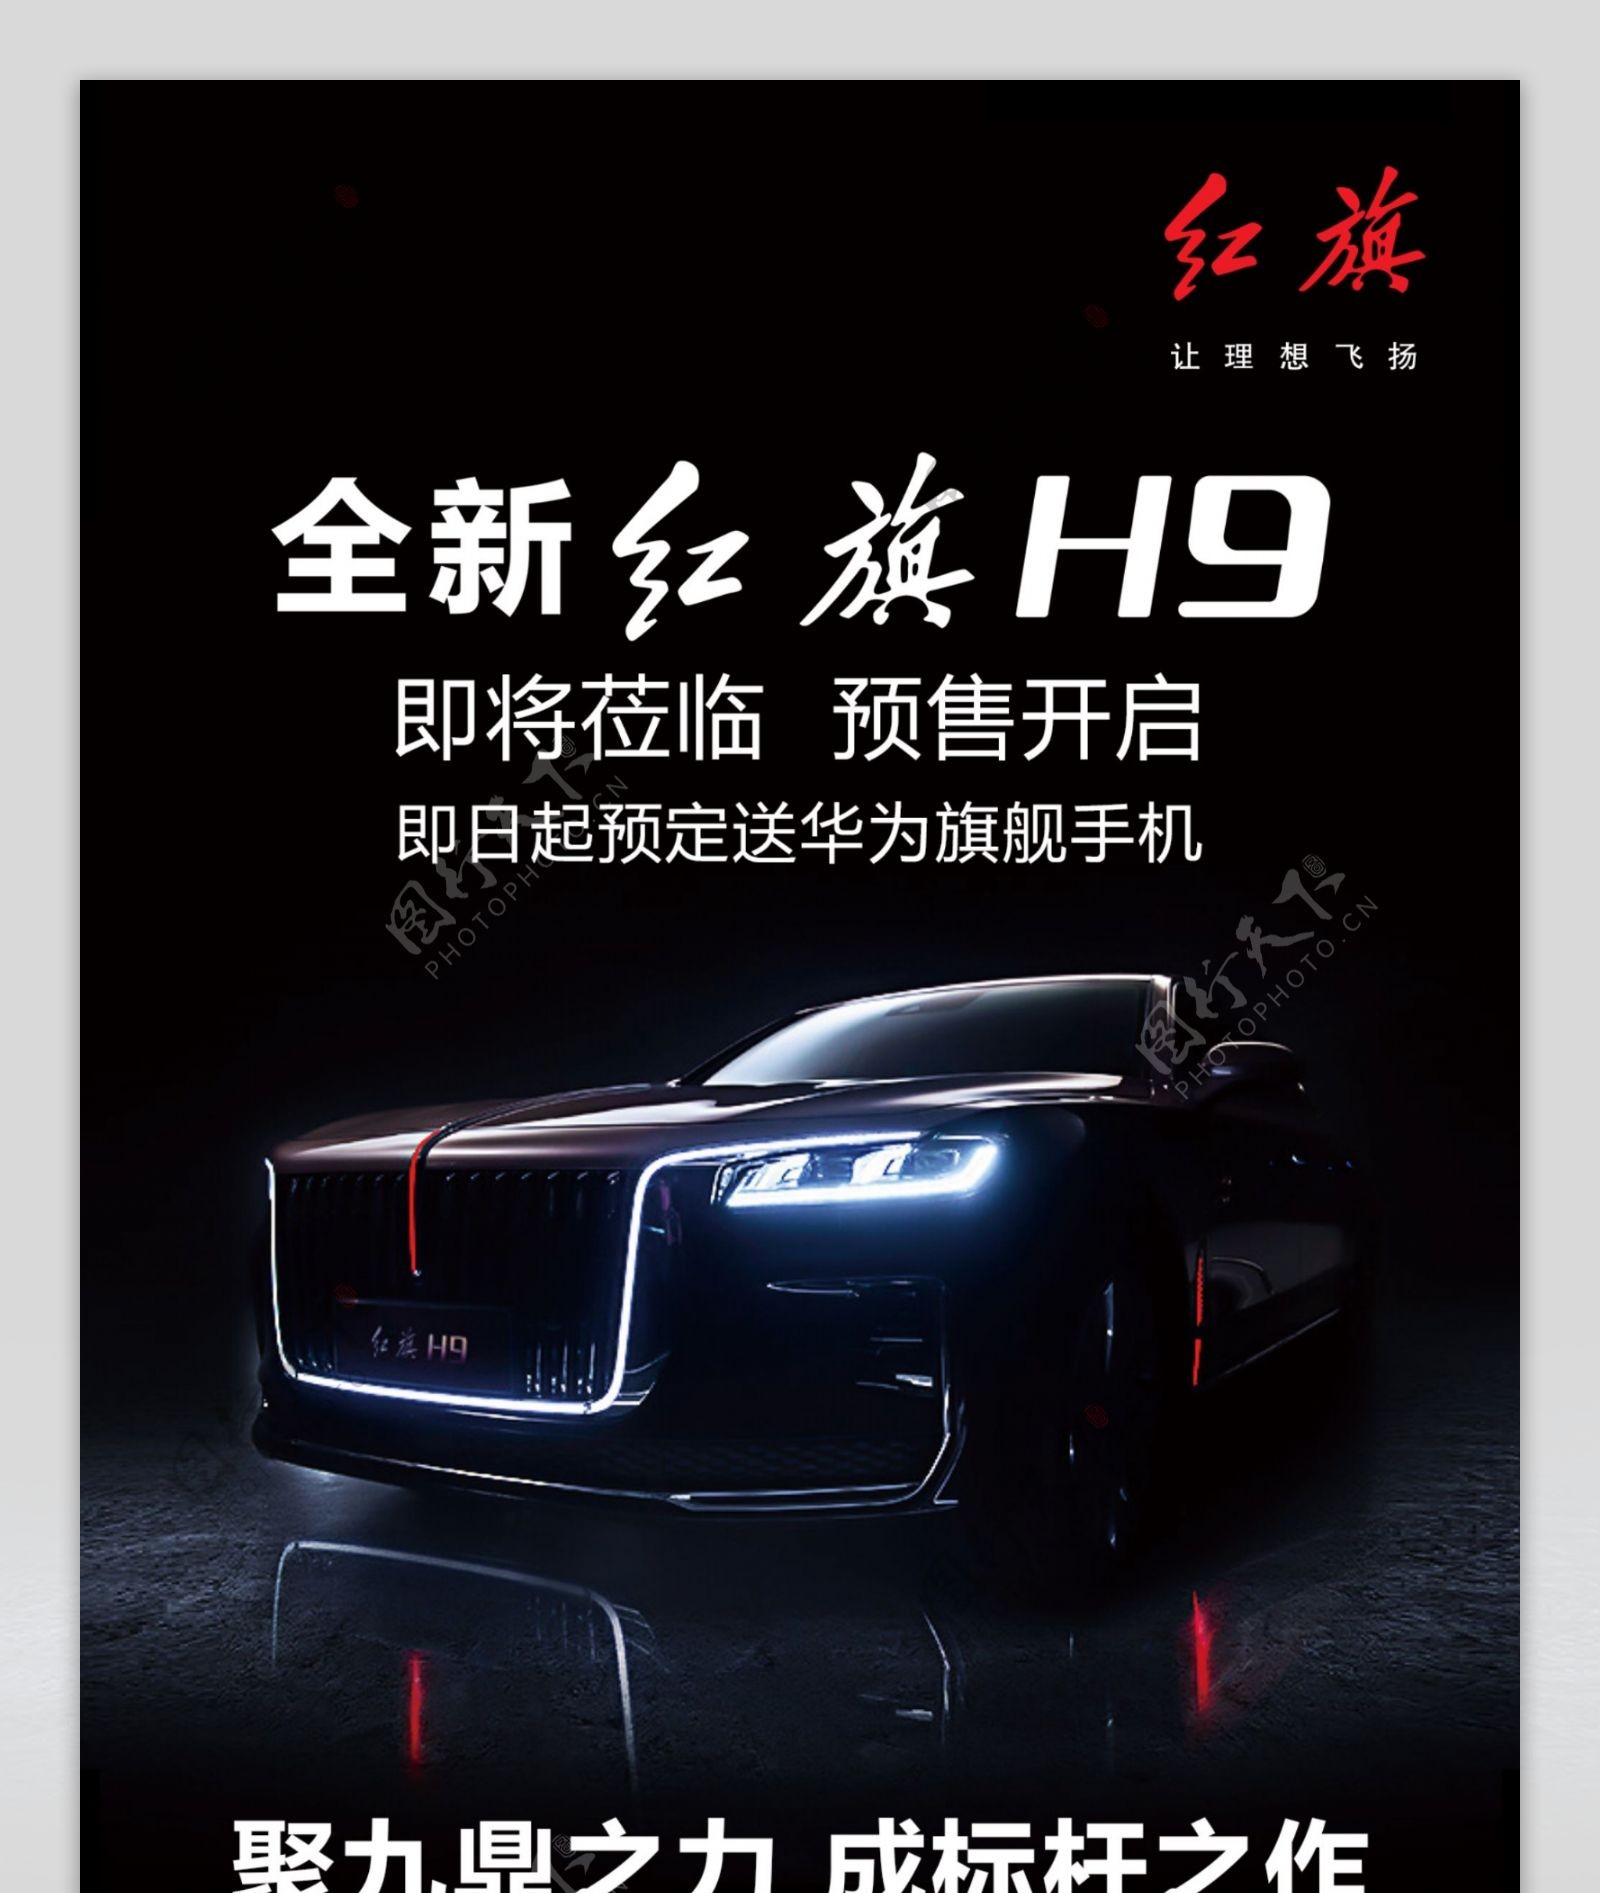 全新红旗H9汽车预售长图